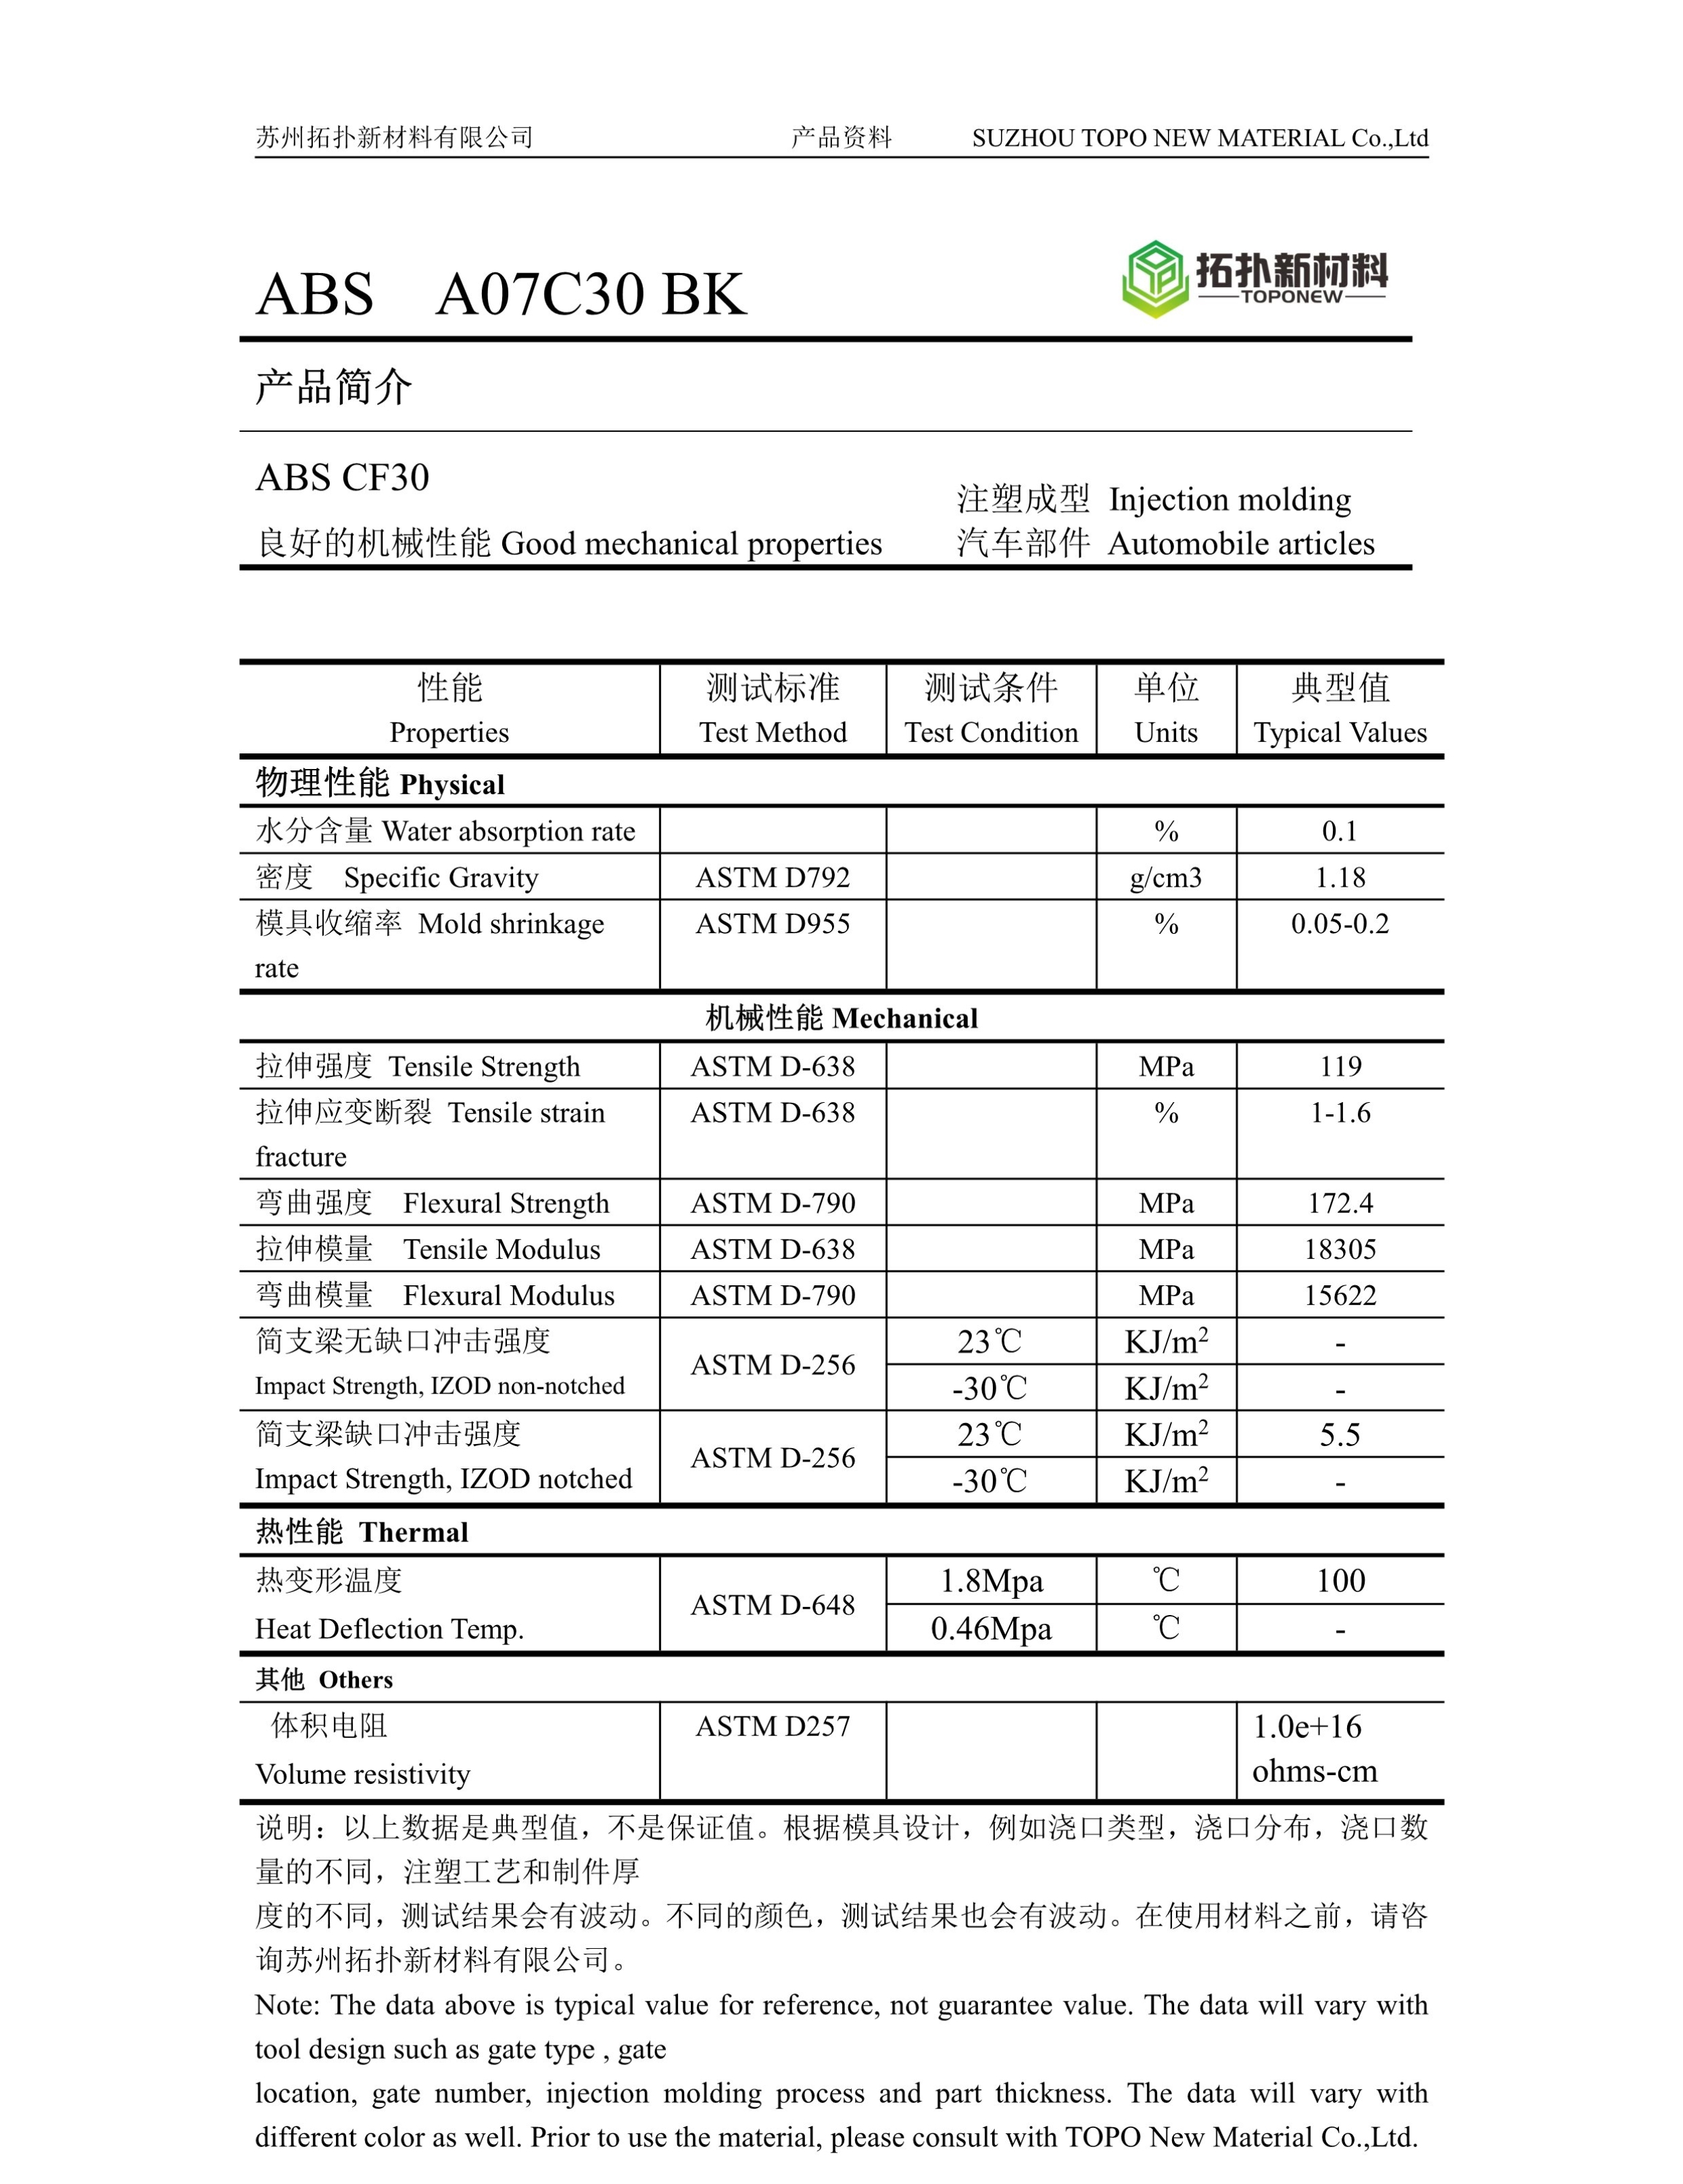 ABS A07C30 BK.jpg